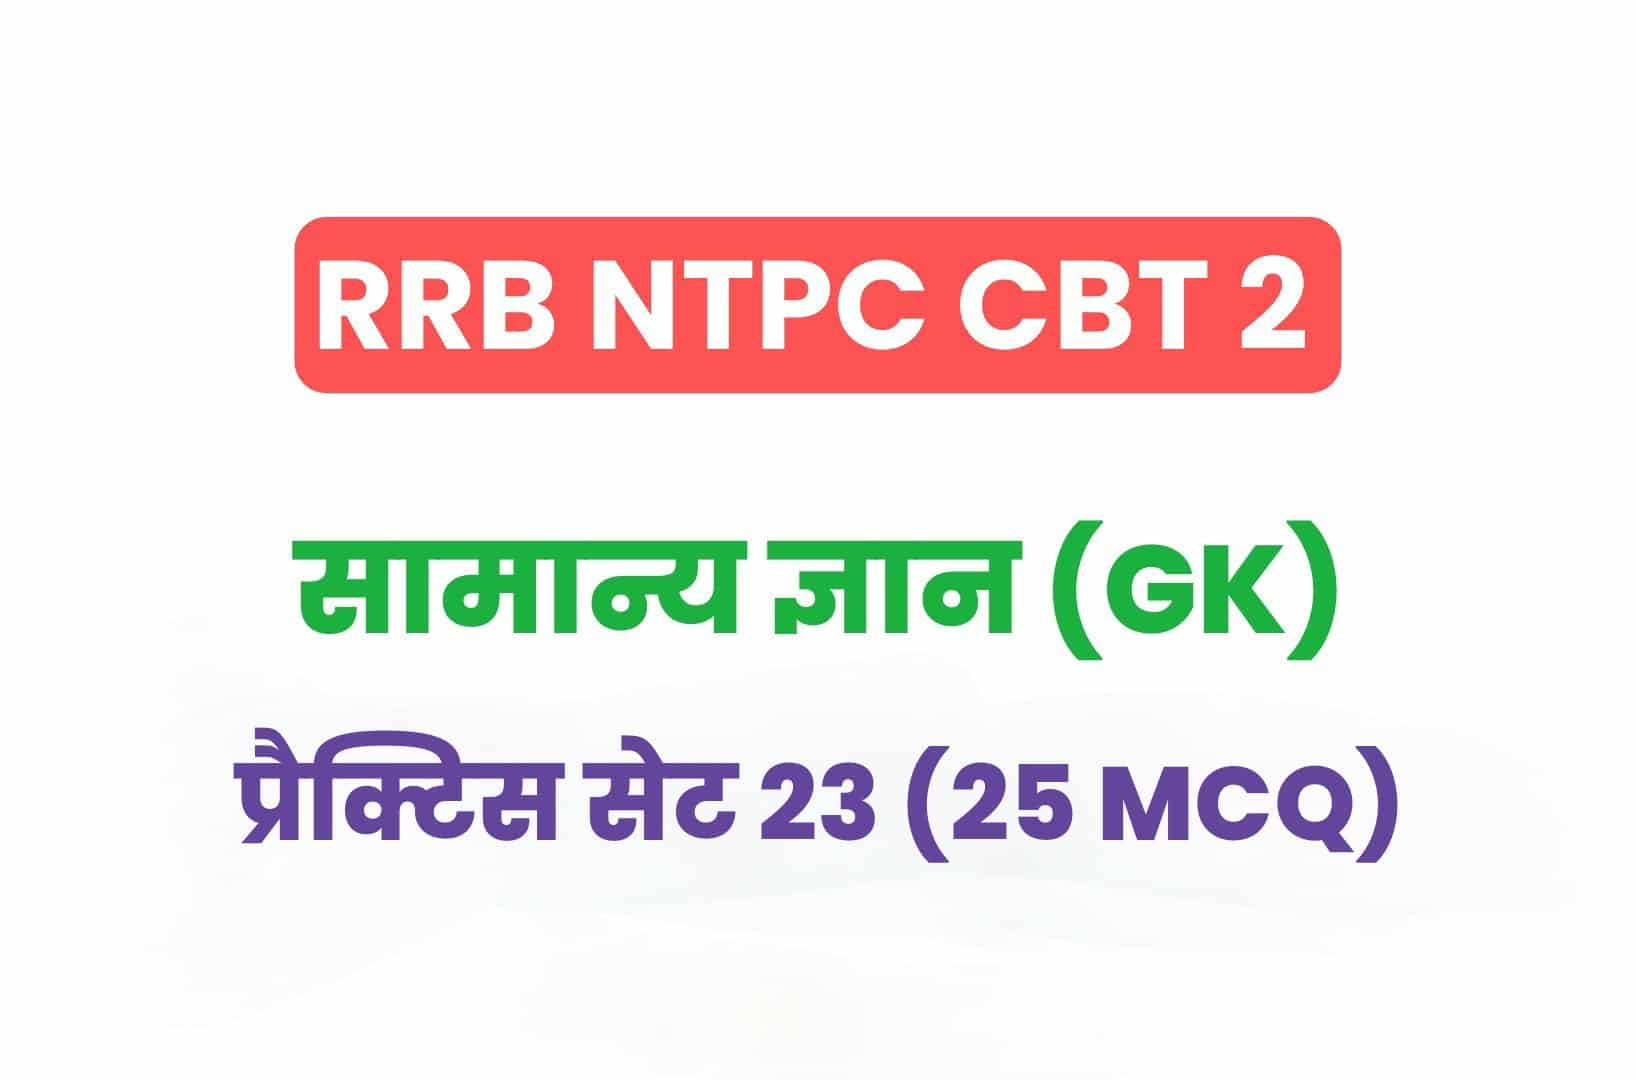 RRB NTPC CBT 2 GK प्रैक्टिस सेट 23: सामान्य ज्ञान के महत्वपूर्ण प्रश्नों का करें अध्ययन